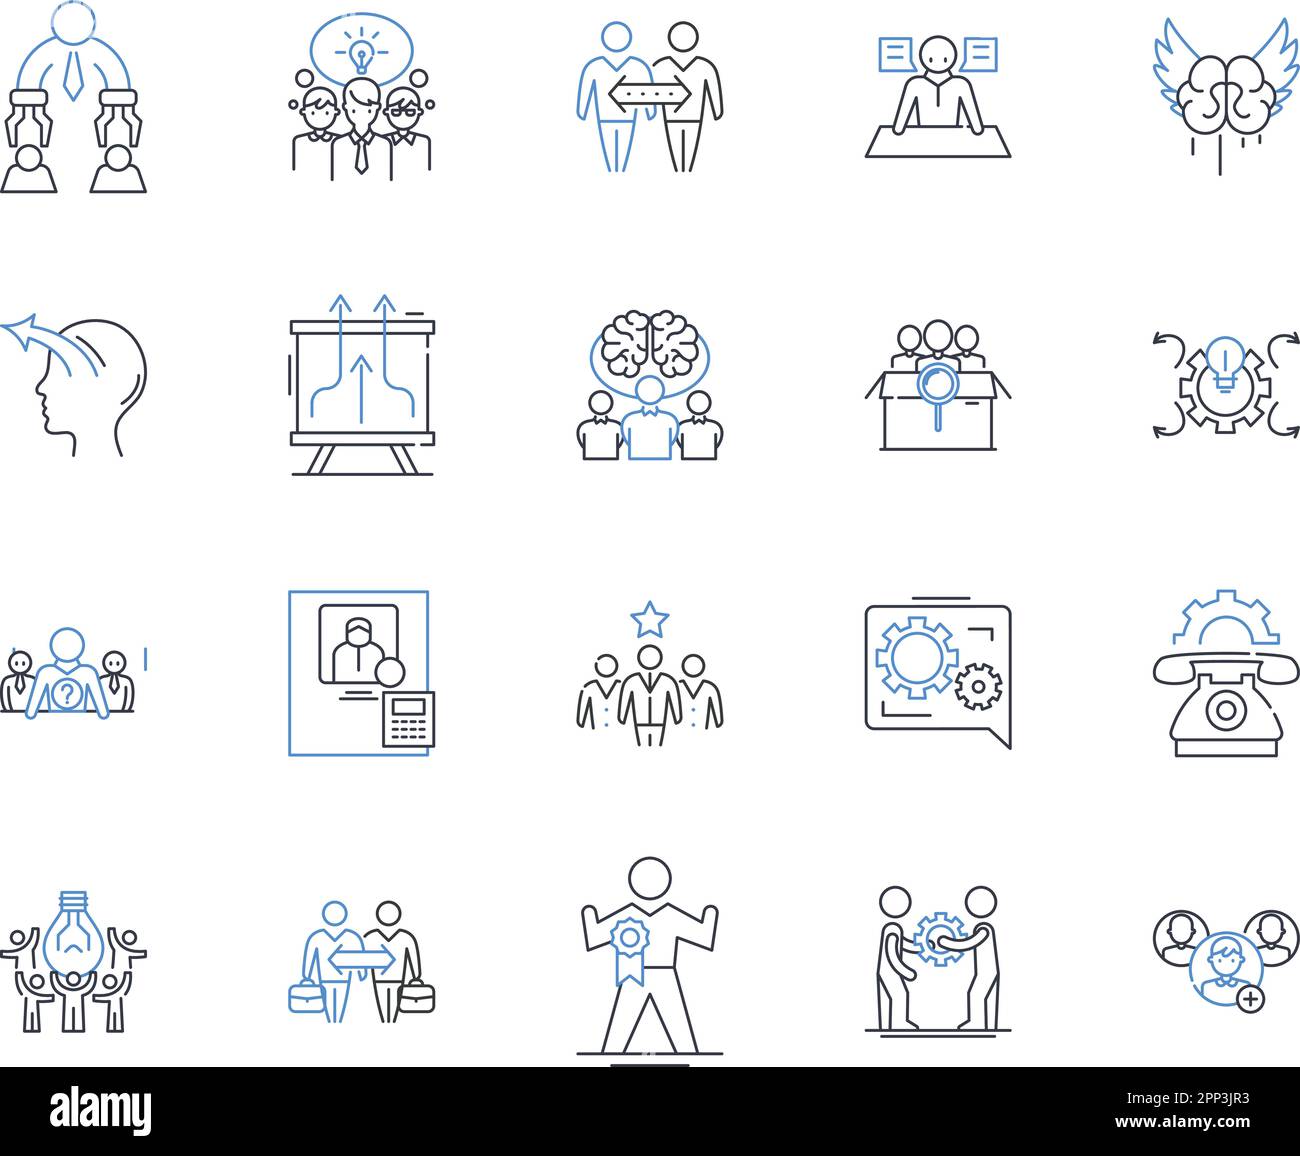 Sammlung der Positionssymbole für die Firmenstruktur. Hierarchie, Abteilungsvorgaben, Teamarbeit, Organigramm, Befehlskette, Zentralisierung Stock Vektor